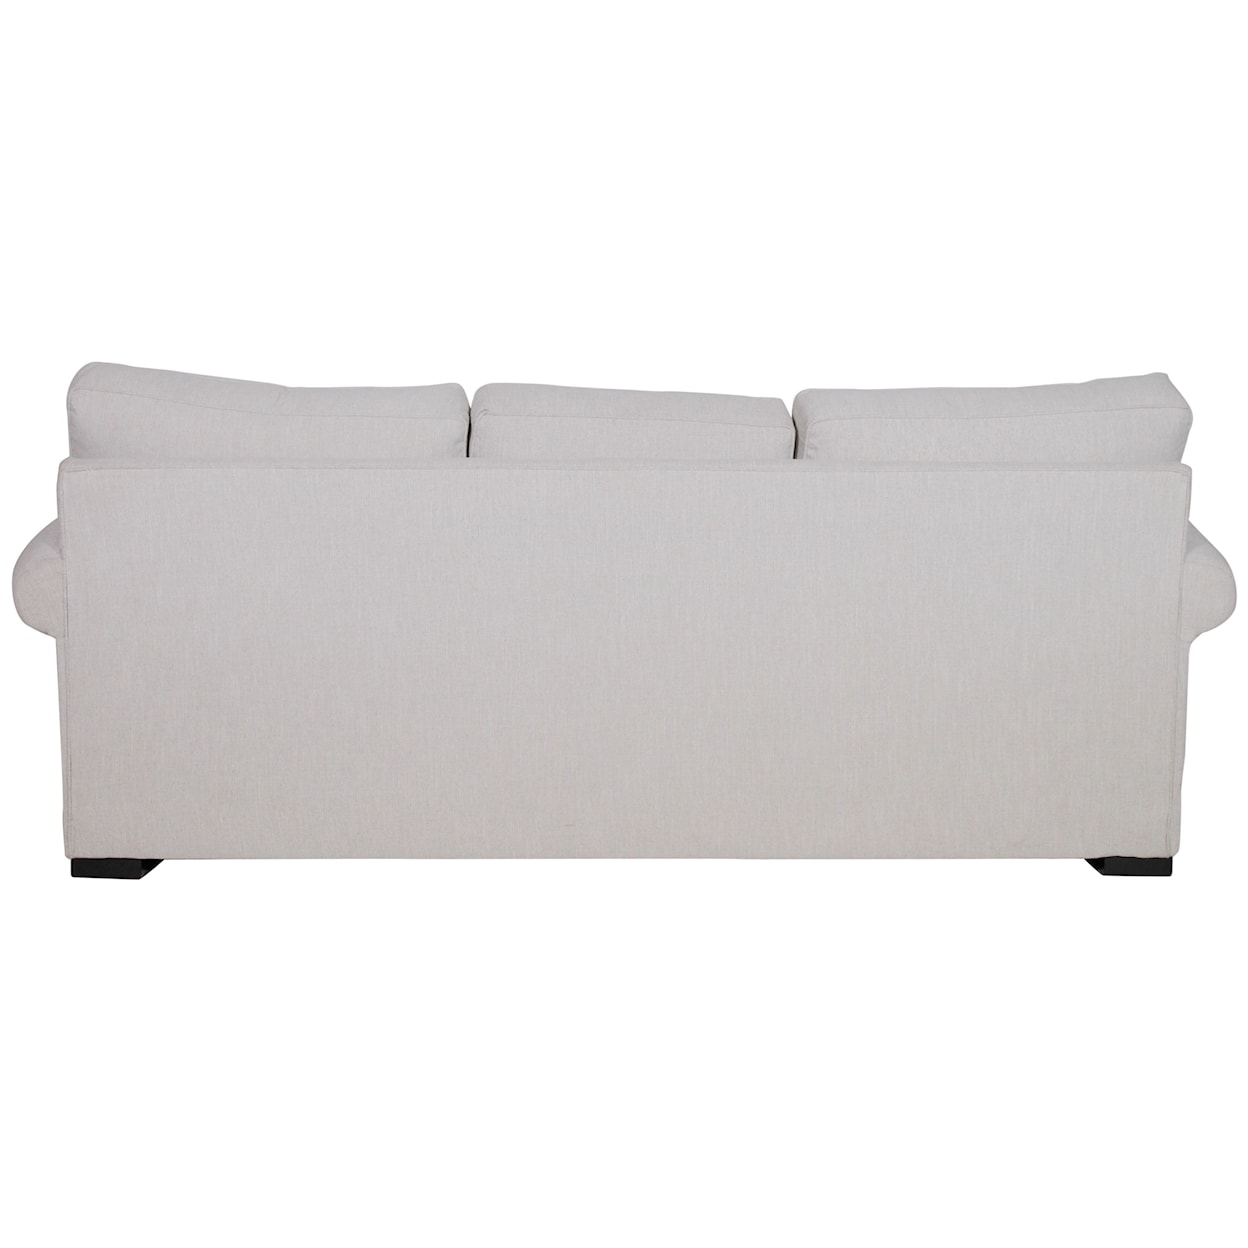 Jonathan Louis Dozy Queen Pillow Top Mattress Sofa Sleeper